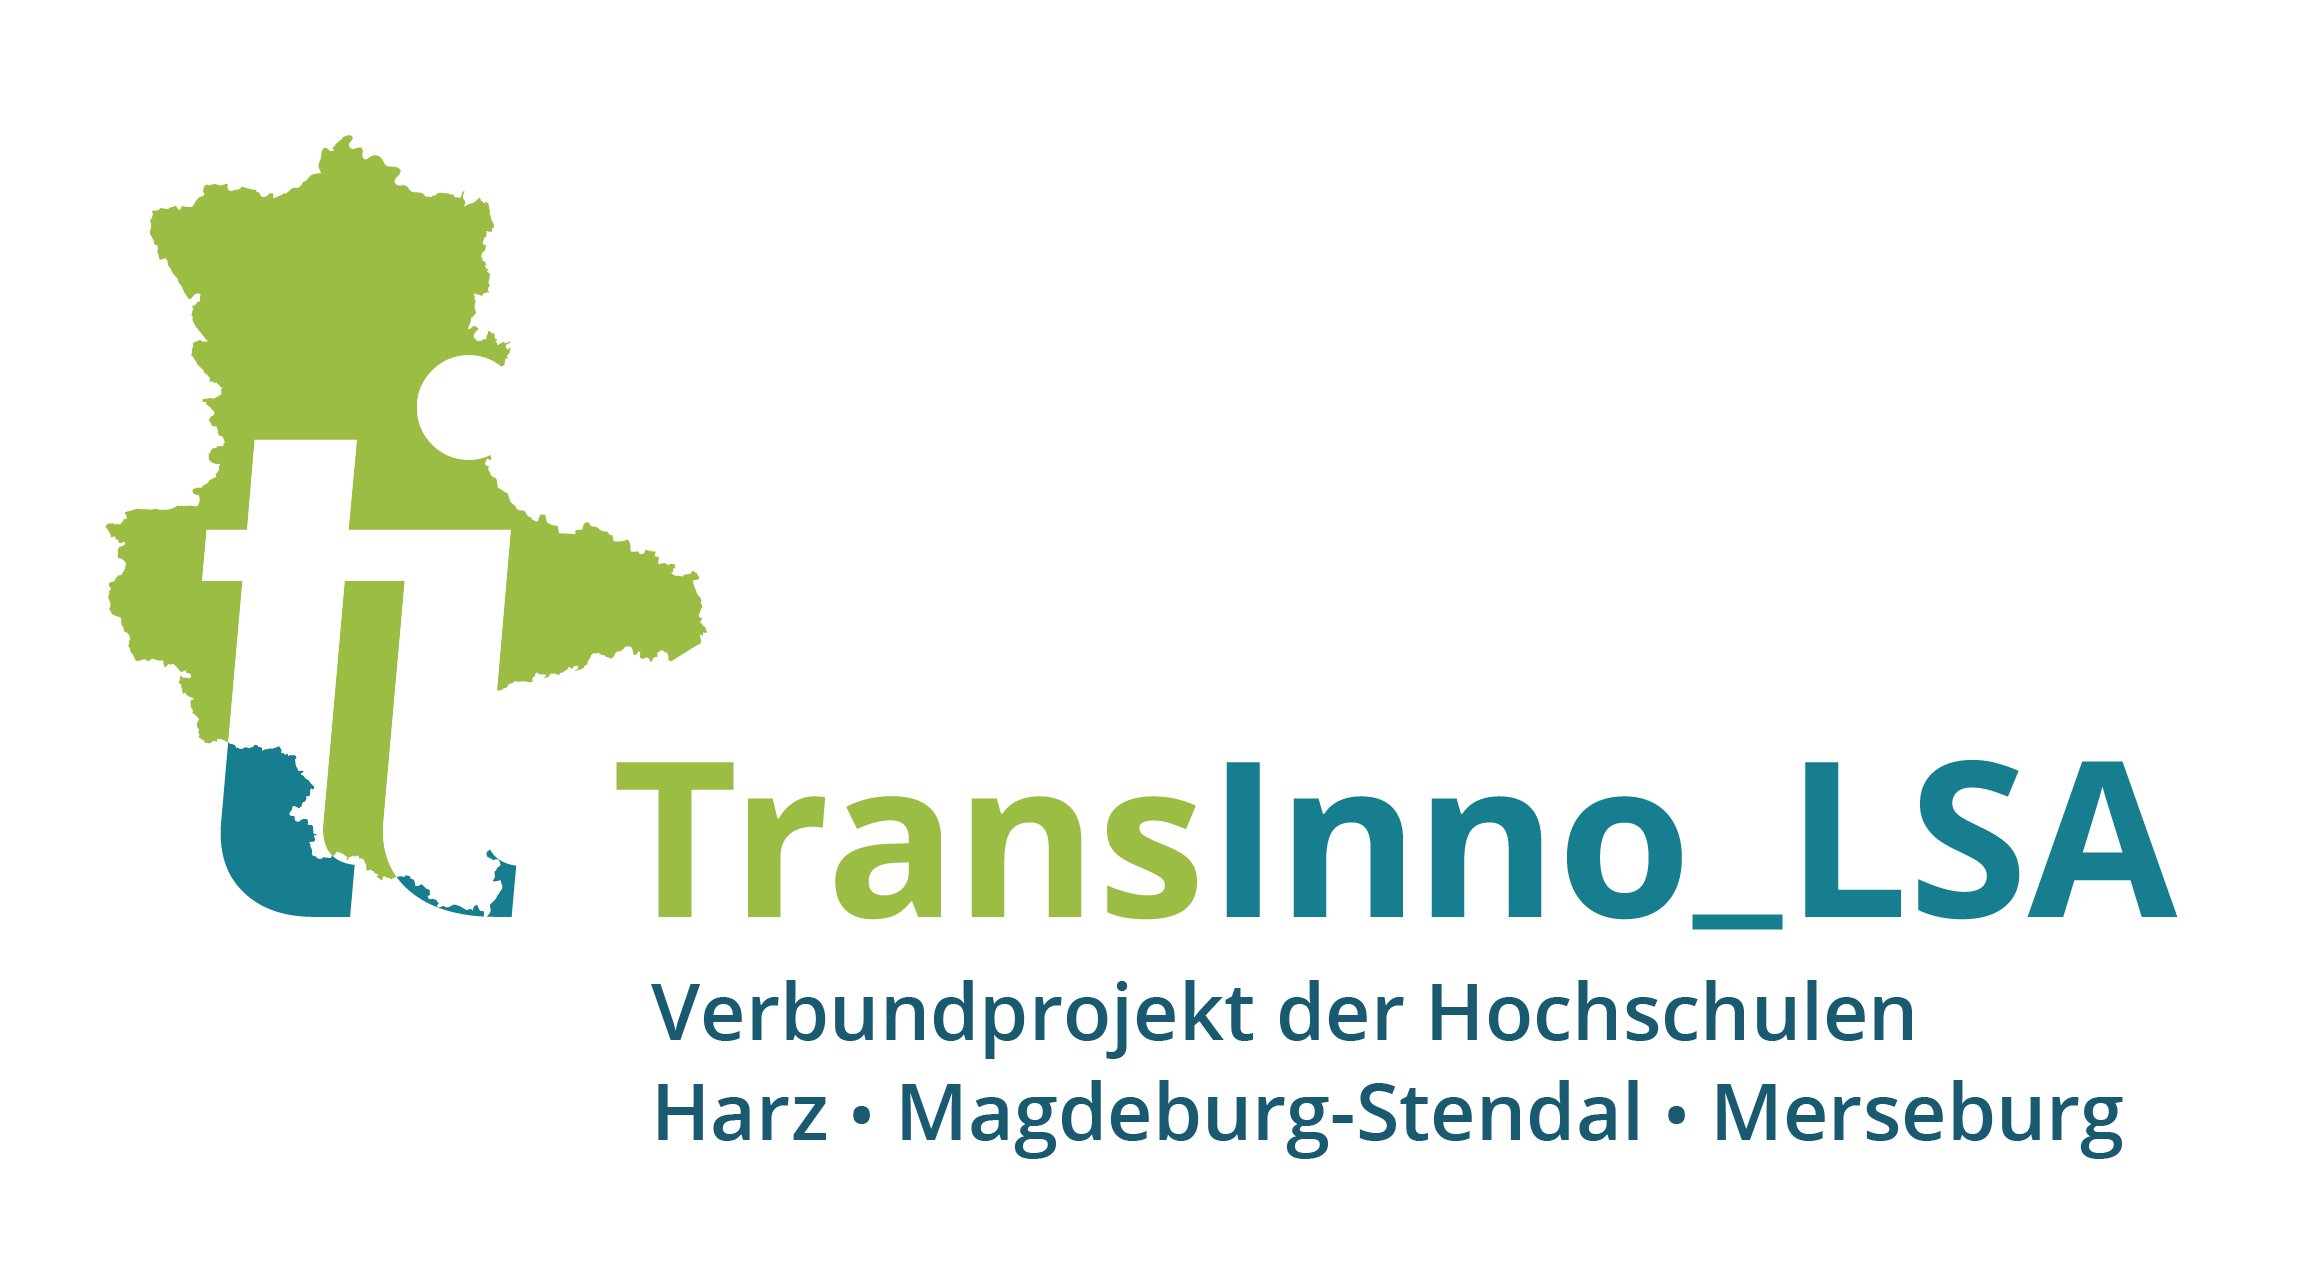 Transinno_LSA logo